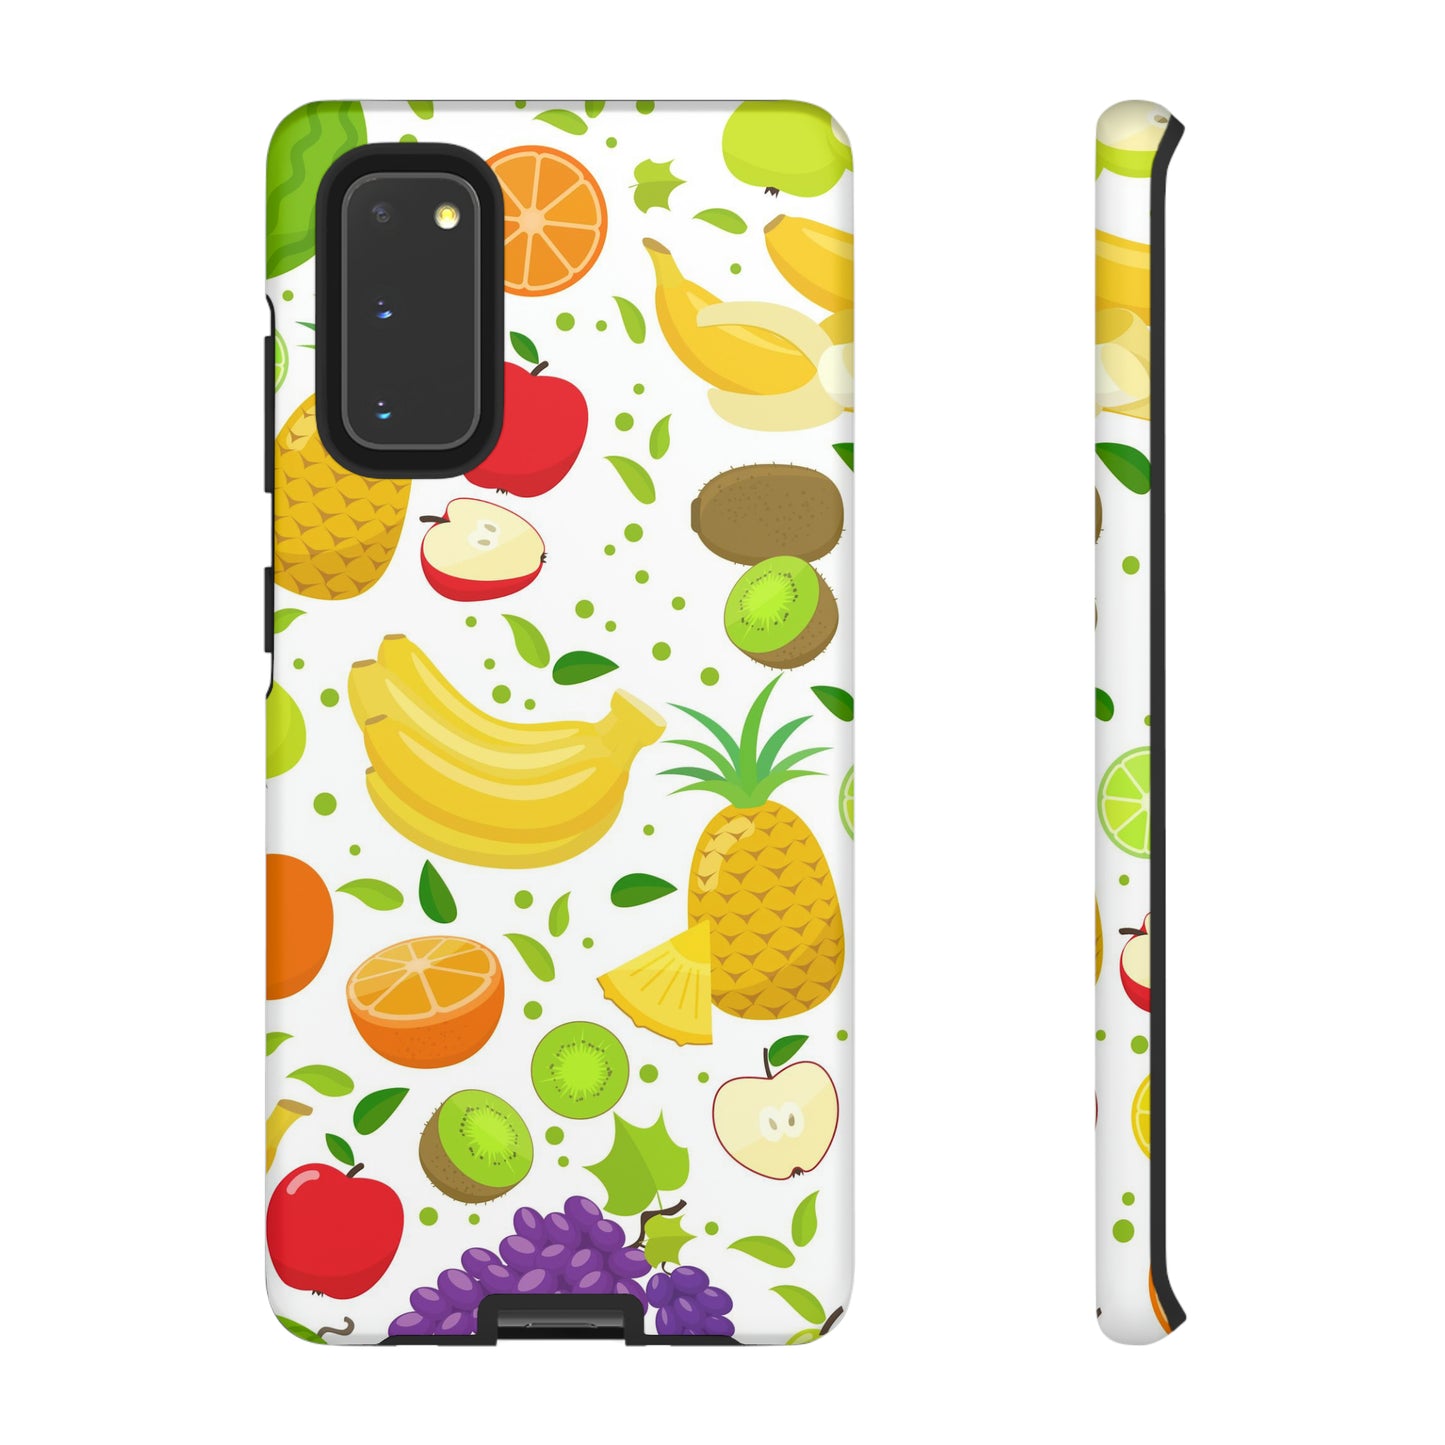 Juicy Samsung phone case